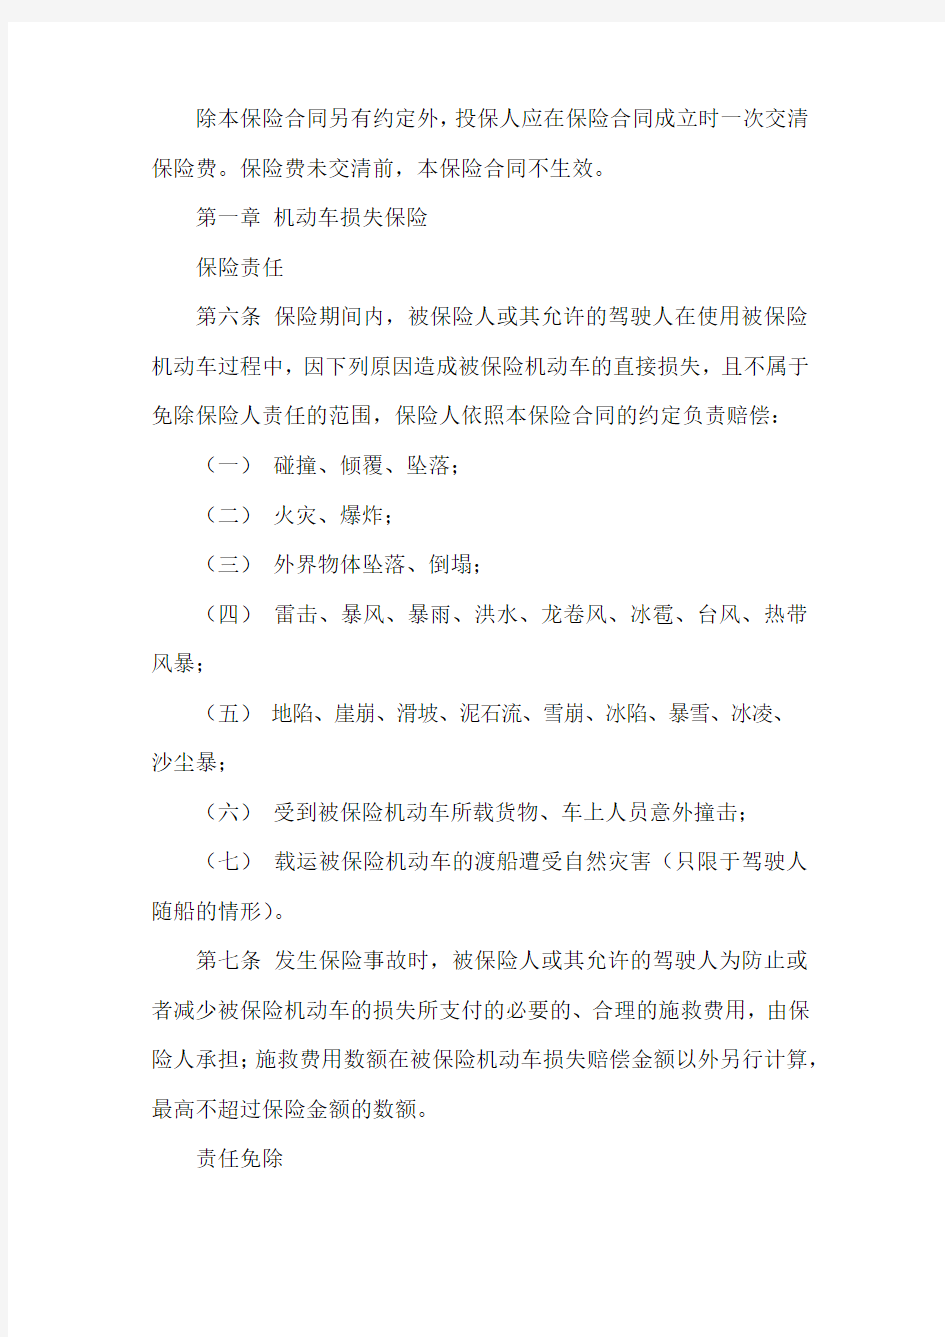 9、中国保险行业协会机动车综合商业保险示范条款(2014版)